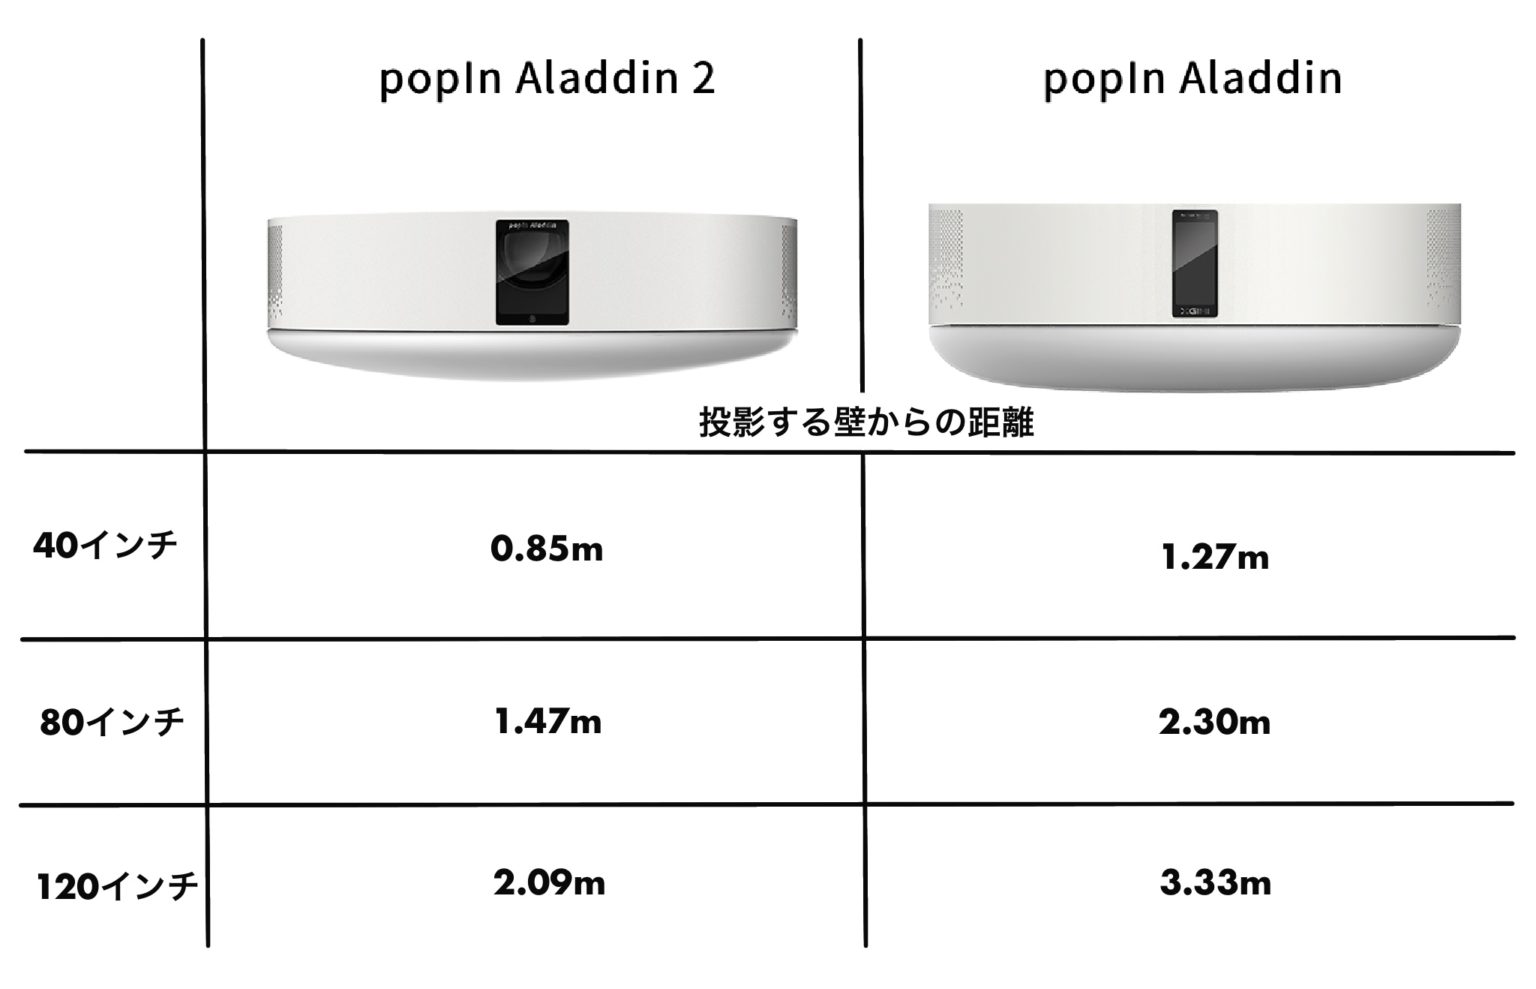 PopIn Aladdin 初代モデル ポップインアラジン - テレビ/映像機器